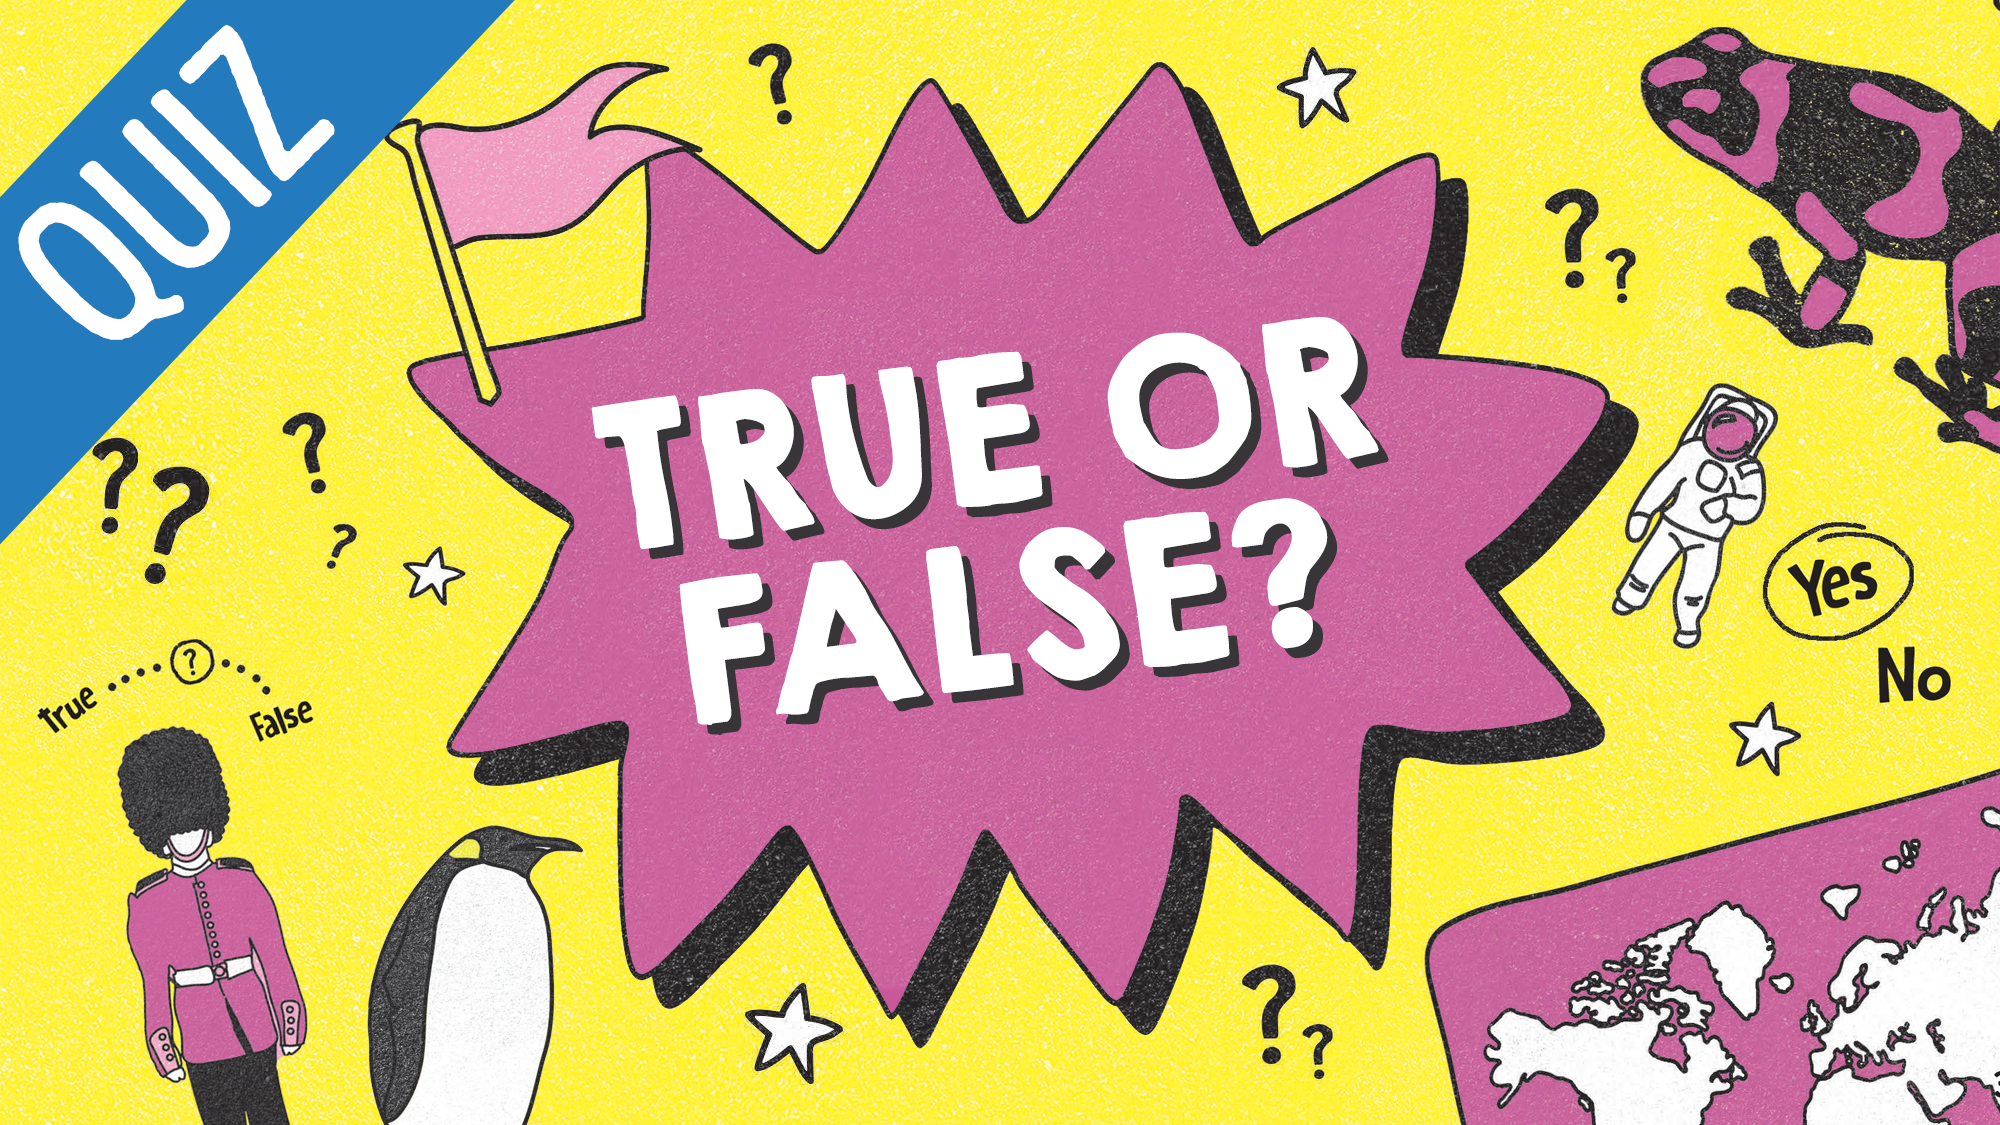 False вопрос. True or false. True or false картинки. True or false Quiz. True or false белый фон.